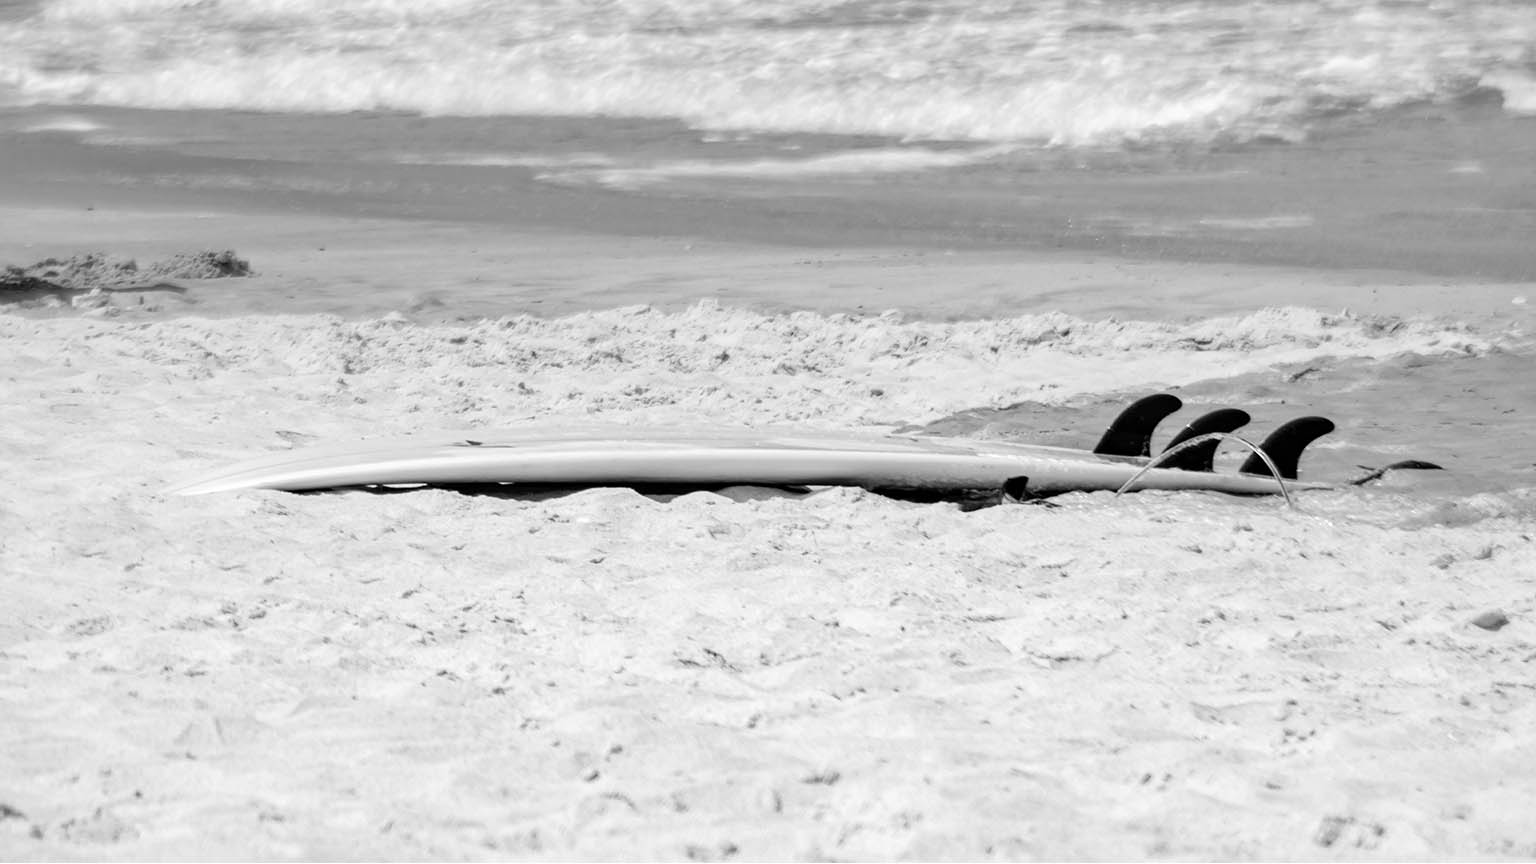 surfer board 96dpi.jpg